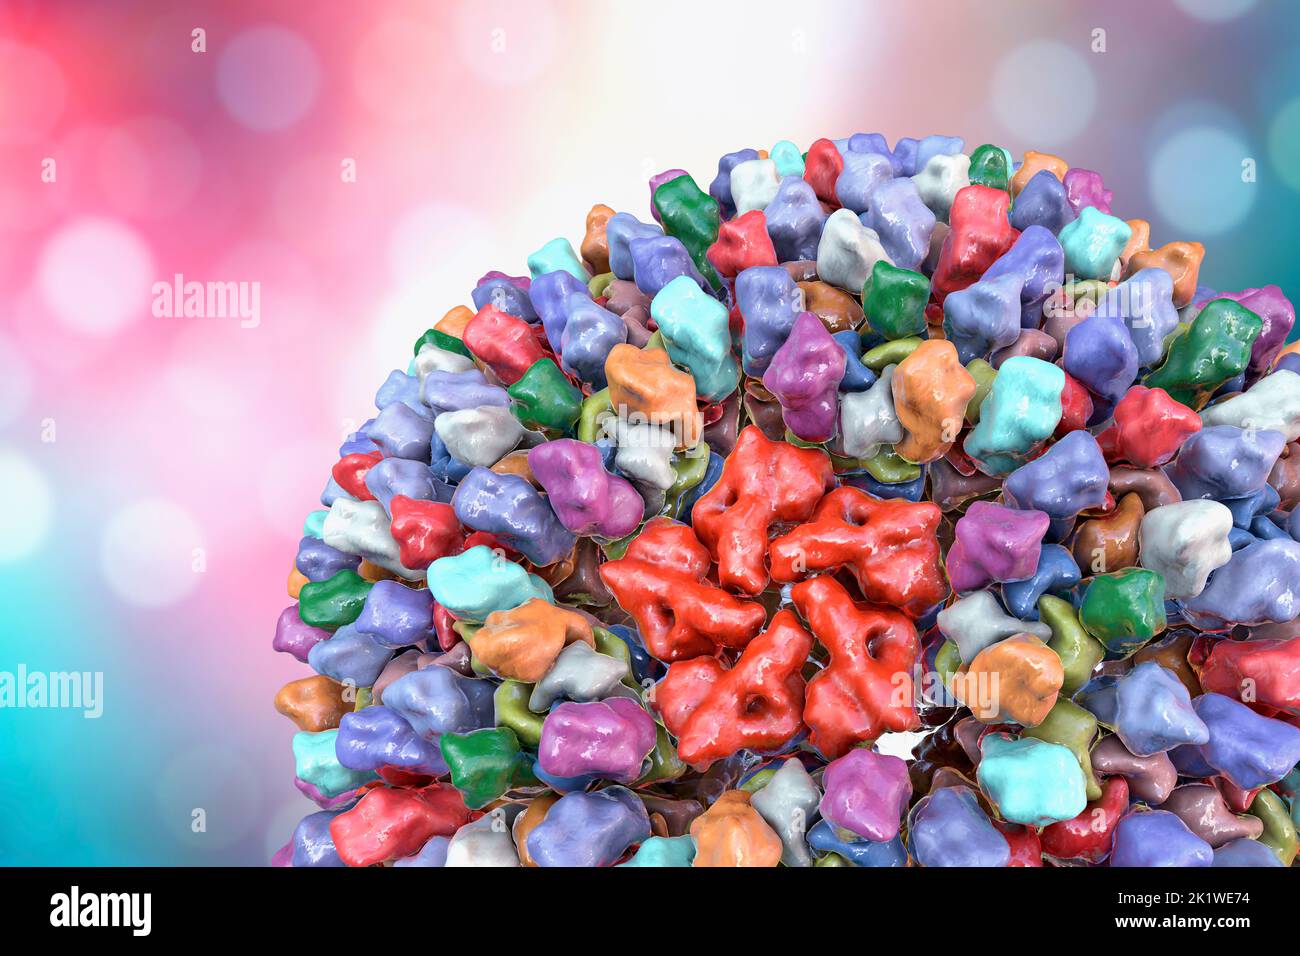 Reovirus, illustration Stock Photo